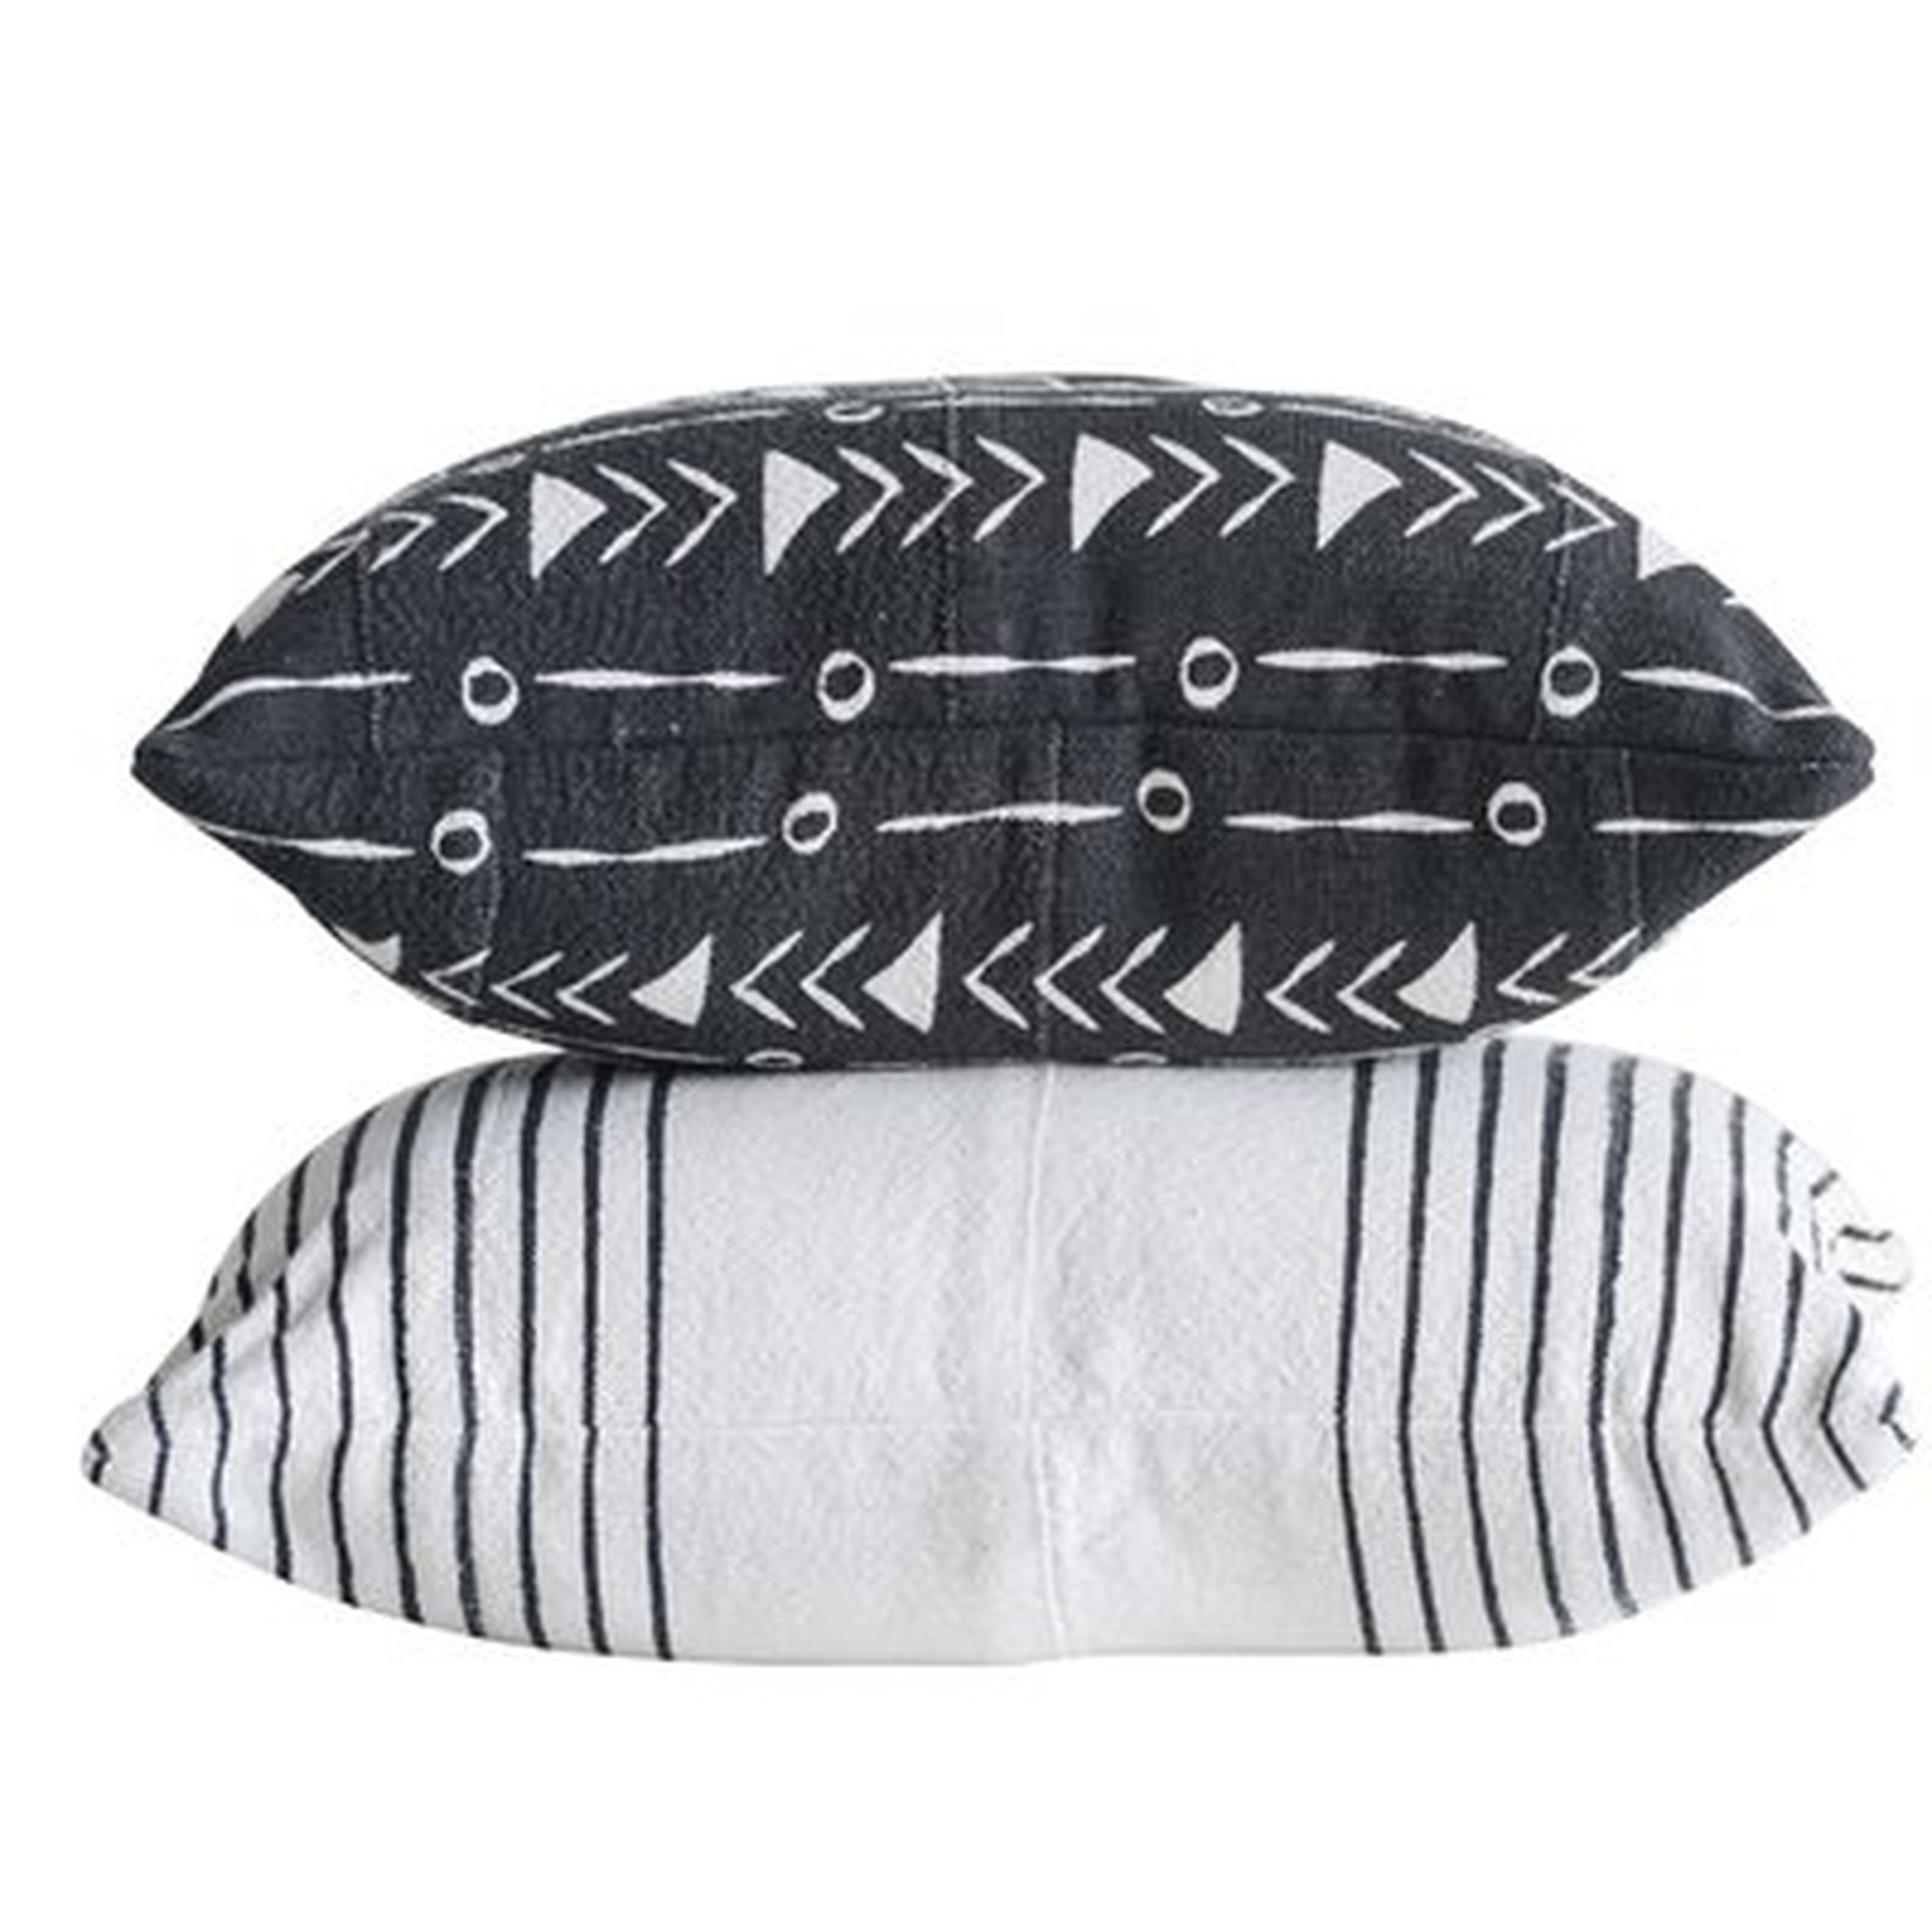 Maree 2 Piece African Mudcloth Patterned Cotton Lumbar Pillows - set of 2 - Wayfair